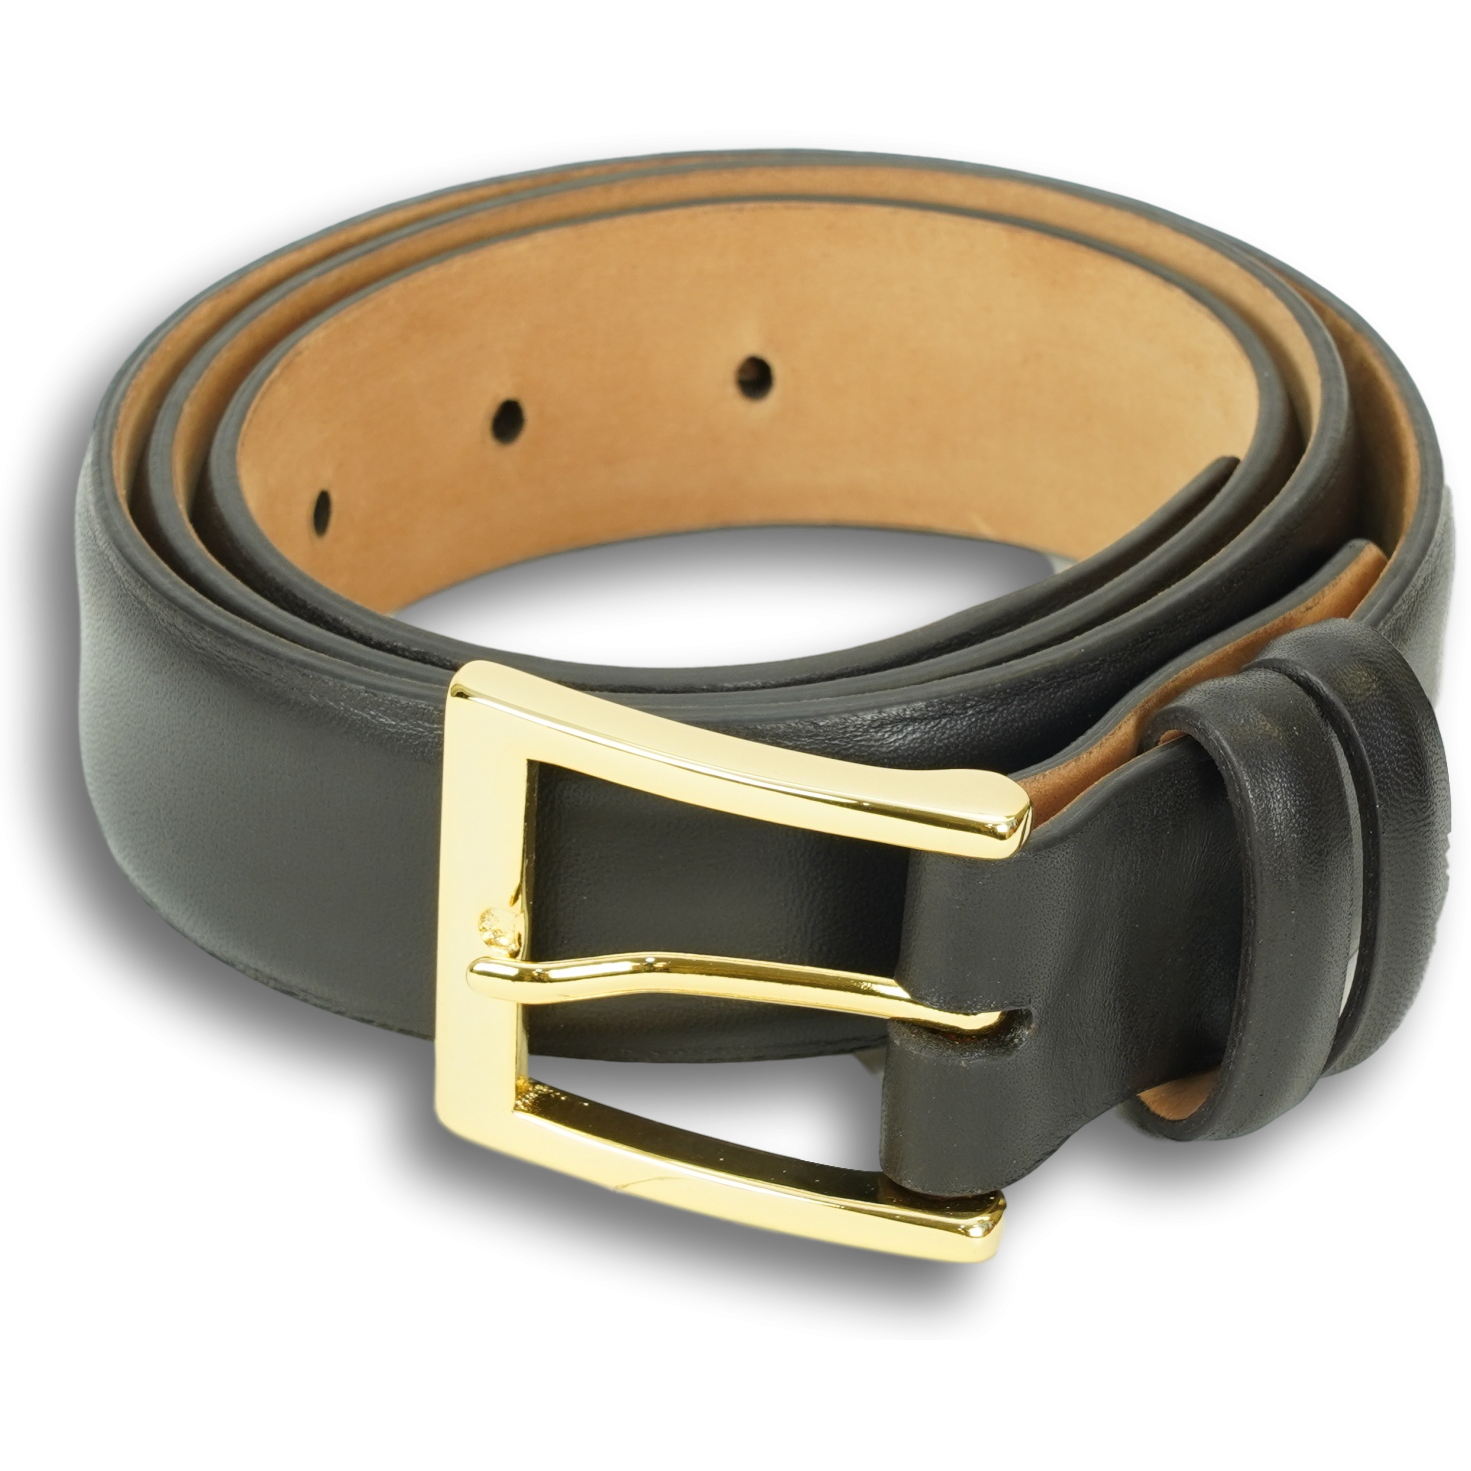 1 1/4" Semi-Matte Calfskin Belt with Brass Buckle